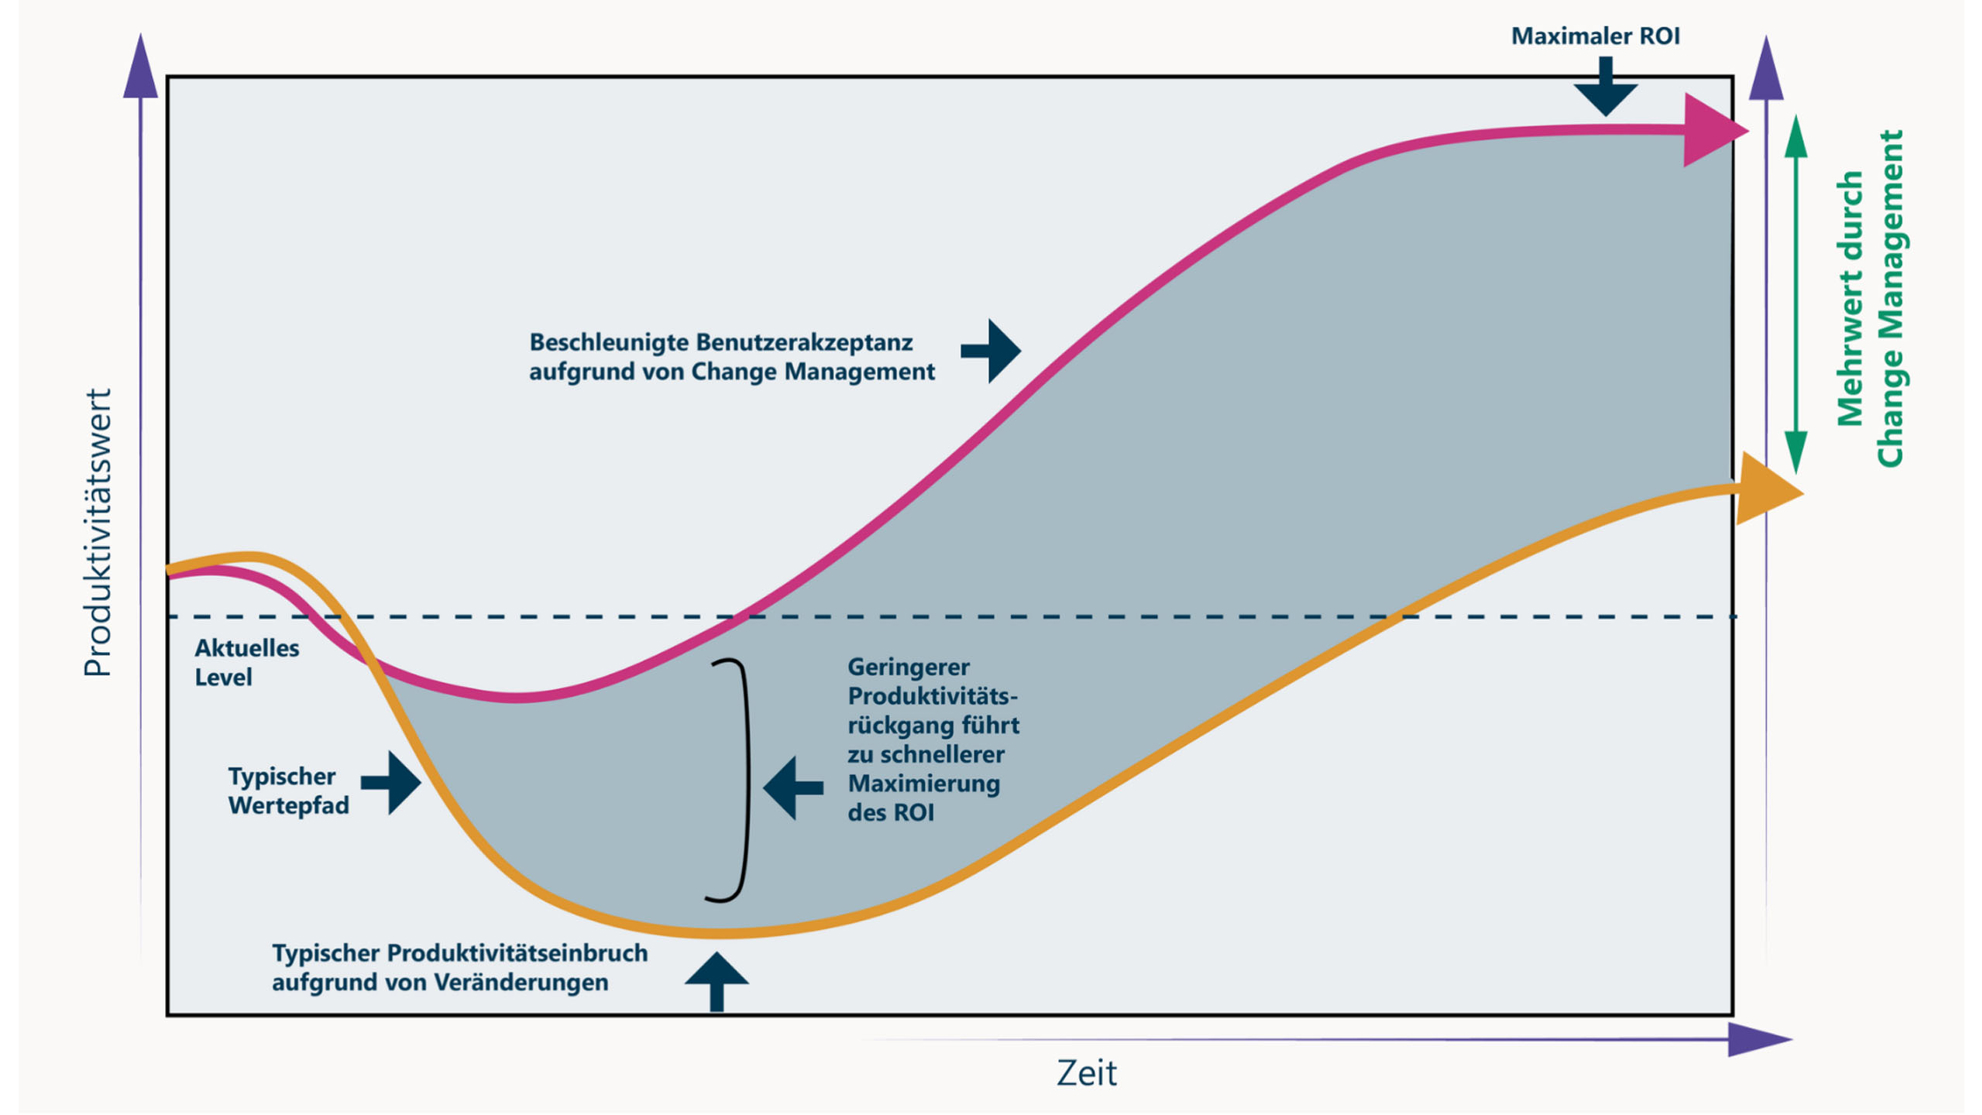 Mehrwert von Change Management und User Adoption in einer Grafik dargestellt